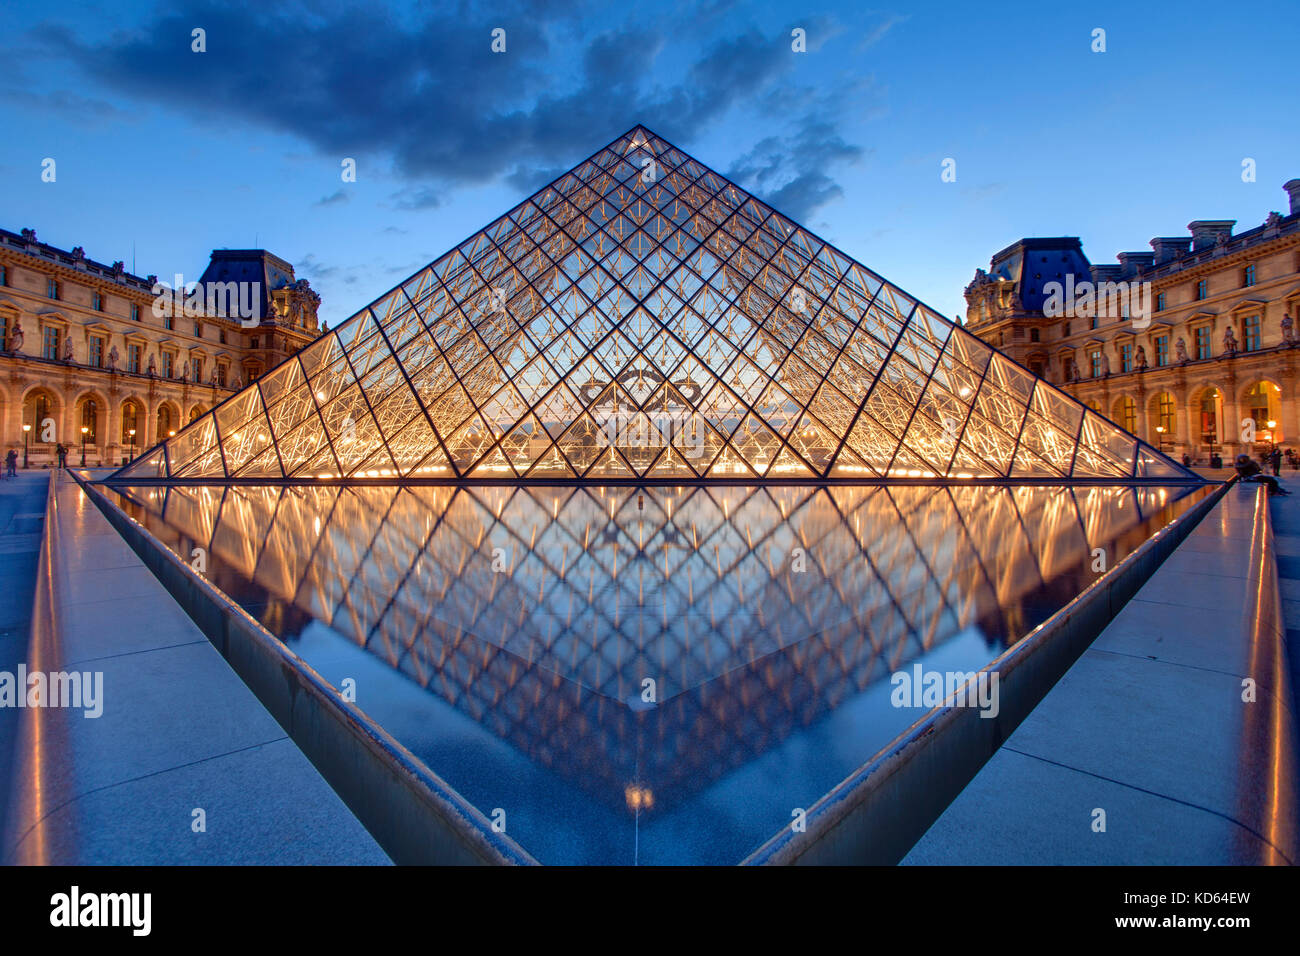 Paris (Frankreich): der Louvre Pyramide, ein großes Glas und Metall Pyramide am Eingang zum Museum, entworfen vom Architekten I.M. Pei, hier leuchtet an der Nahe. Stockfoto